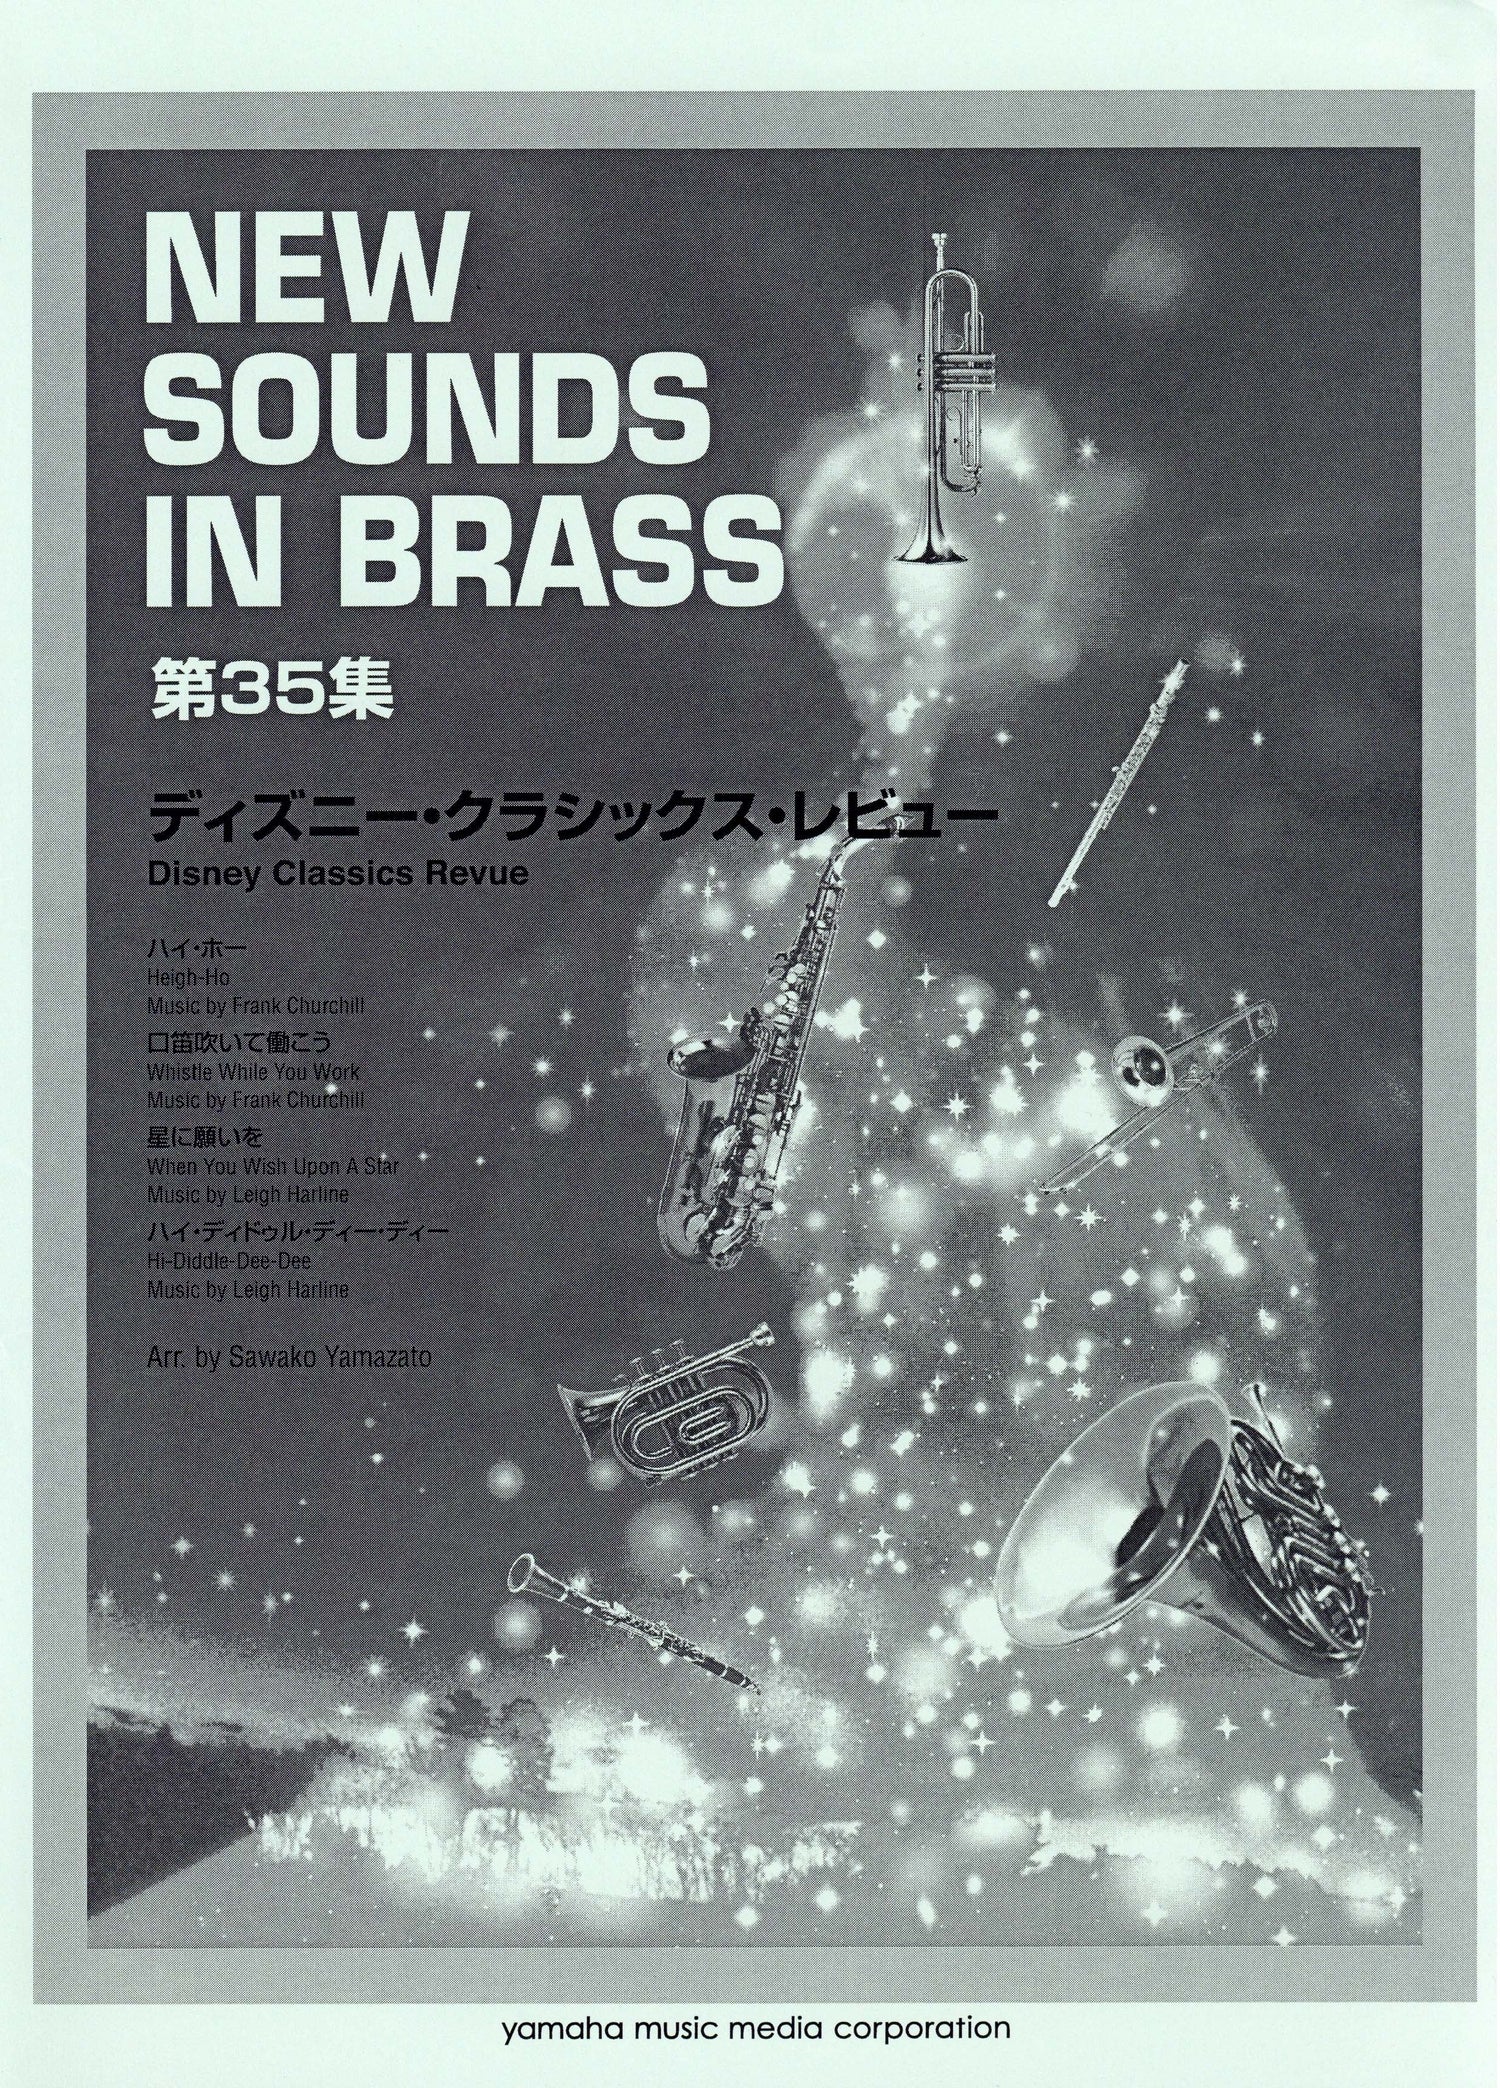 New Sounds in BRASS ディズニー・クラシックス・レビュー 復刻版